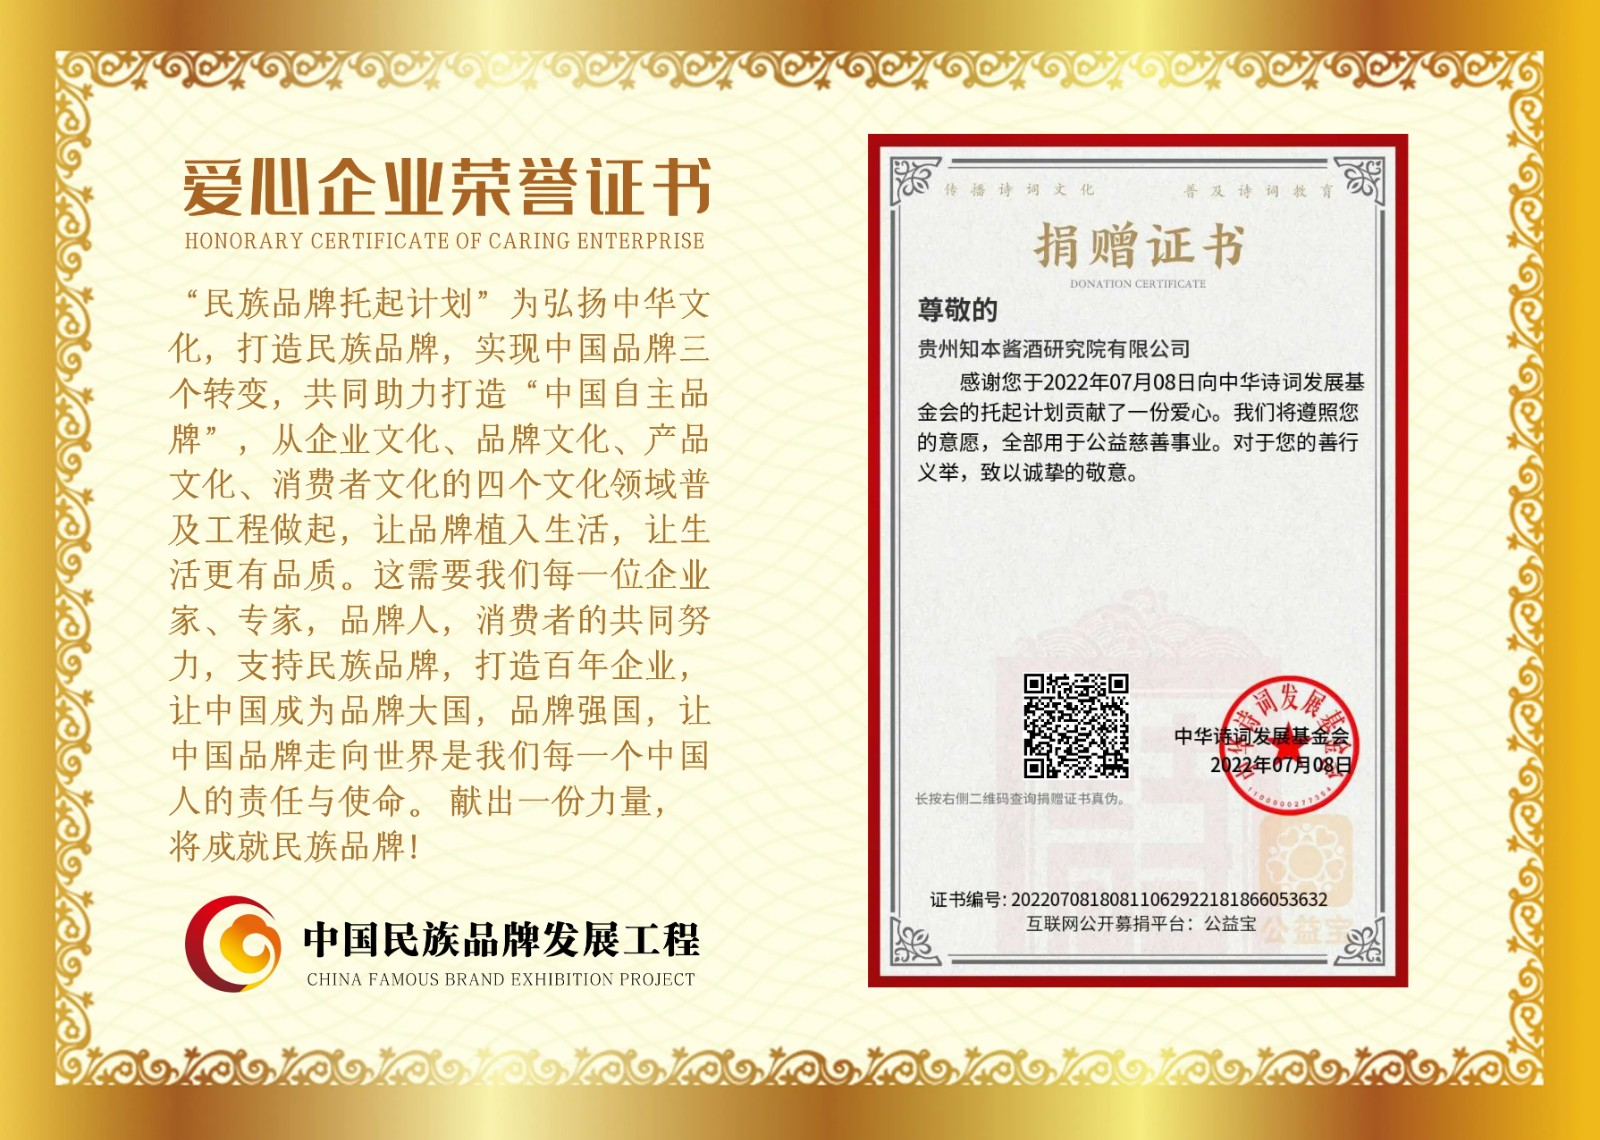 贵州知本酱酒研究院有限公司爱心企业证书.jpeg